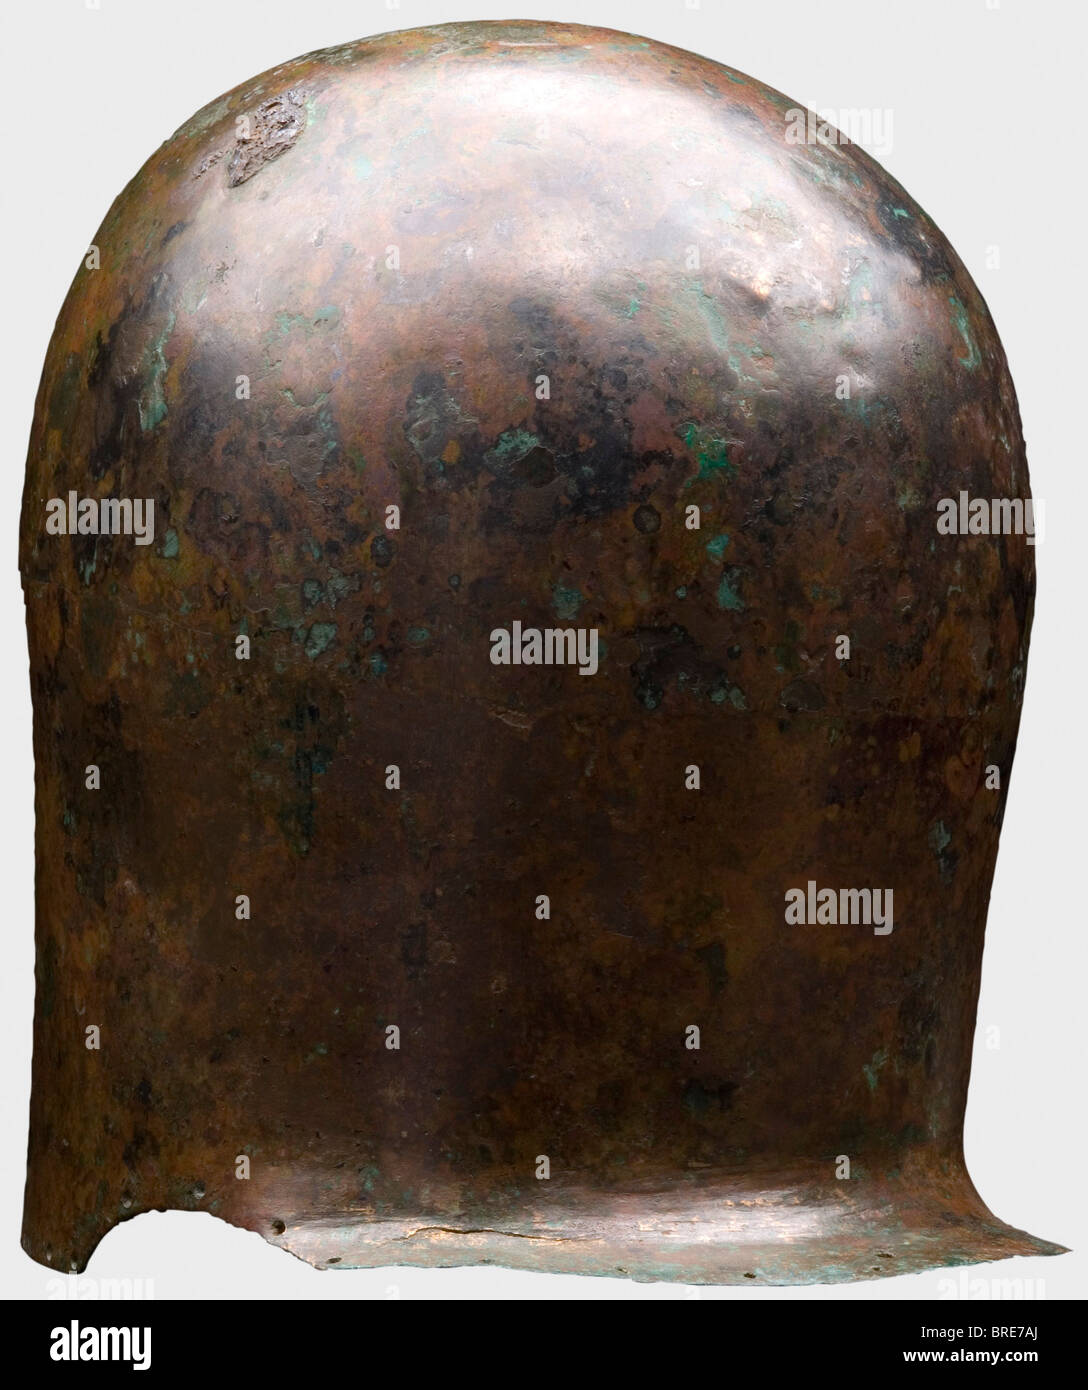 Ein korinthischer Helm, 7. Jahrhundert vor Christus EIN schwerer Bronzepelhelm aus zwei horizontalen Hälften, die miteinander vernietet sind. Die Stifte (17) sind noch auf der Innenseite erkennbar. Hoher gewölbter Schädel, großer Gesichtsausschnitt. Fragmentarischer Nasenschutz. Umgeben von Löchern für das Helmfutter. Ein Loch im Nackenschutz. Lötspuren links von der Krone. Höhe 23,7 cm. Gewicht 1588 g Rötlich-braune Patina, stellenweise grün und schwarz, manchmal mit metallischer Oberfläche. Dellen. Sammlung Axel Guttmann (H 145/AG 453). 1994 in Genf erworben. Vgl. Ein ähnliches, wenn auch weniger vorsichtig m, Stockfoto